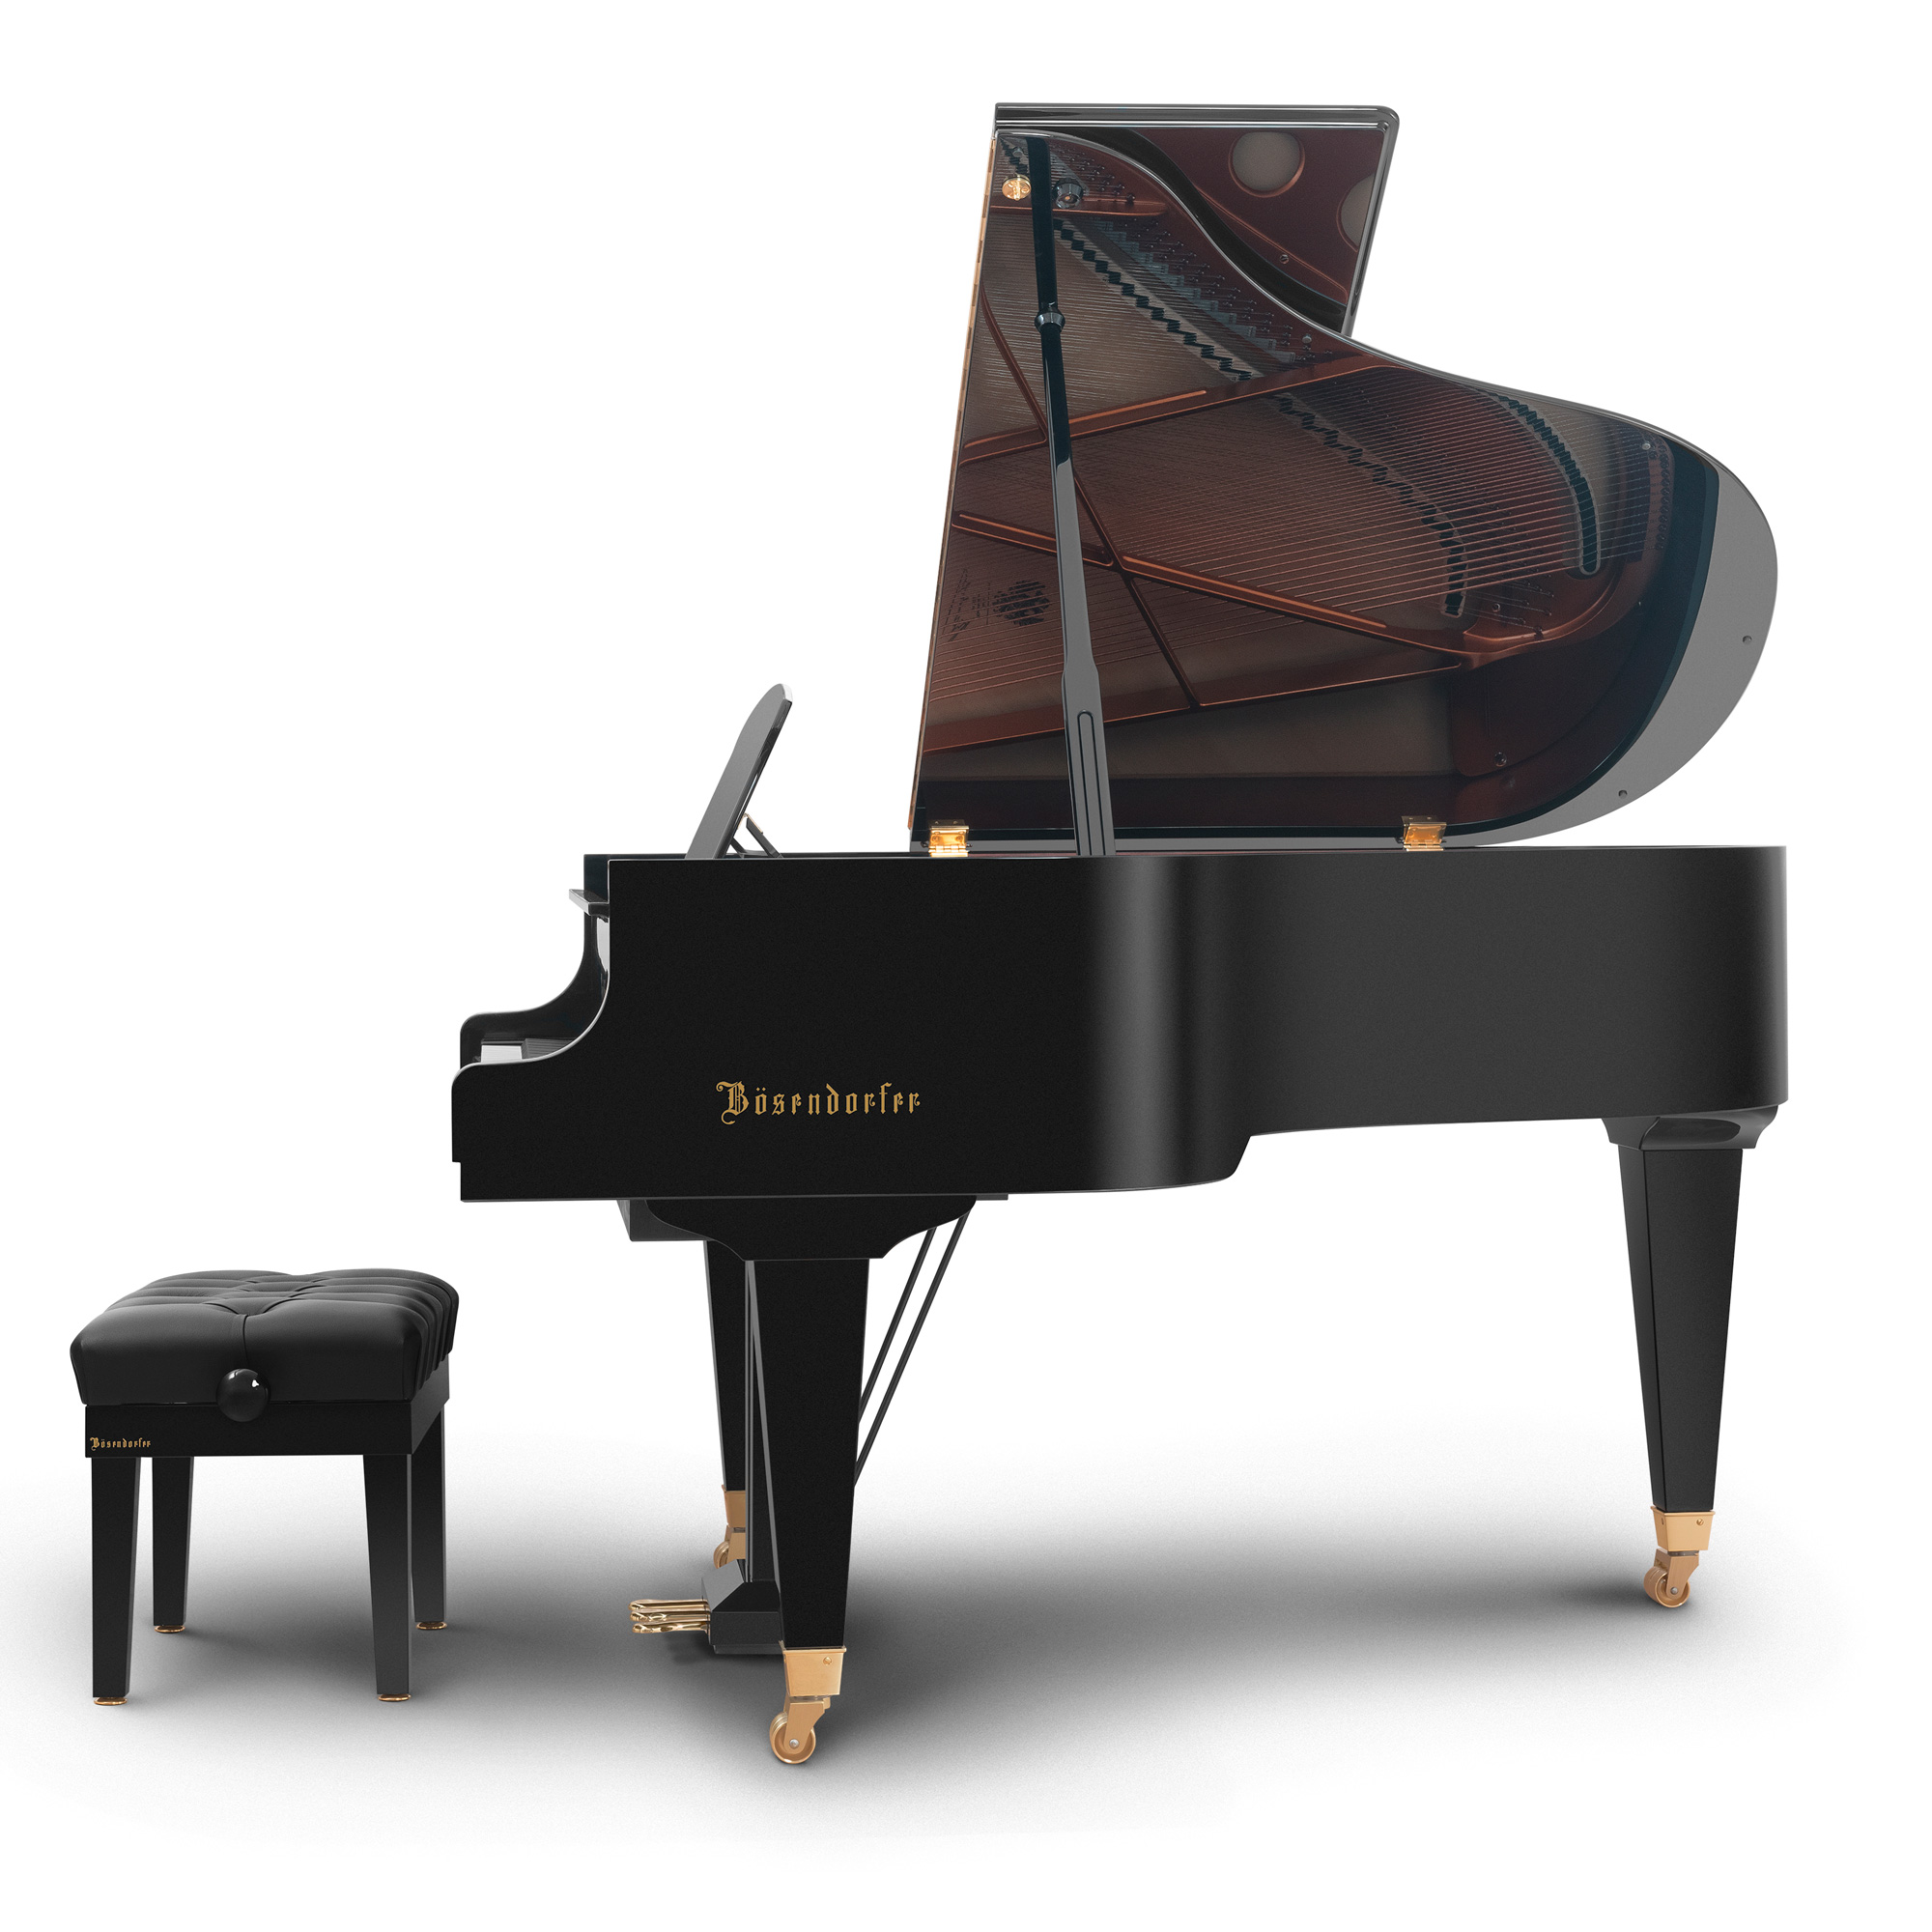 Grand Piano 170VC